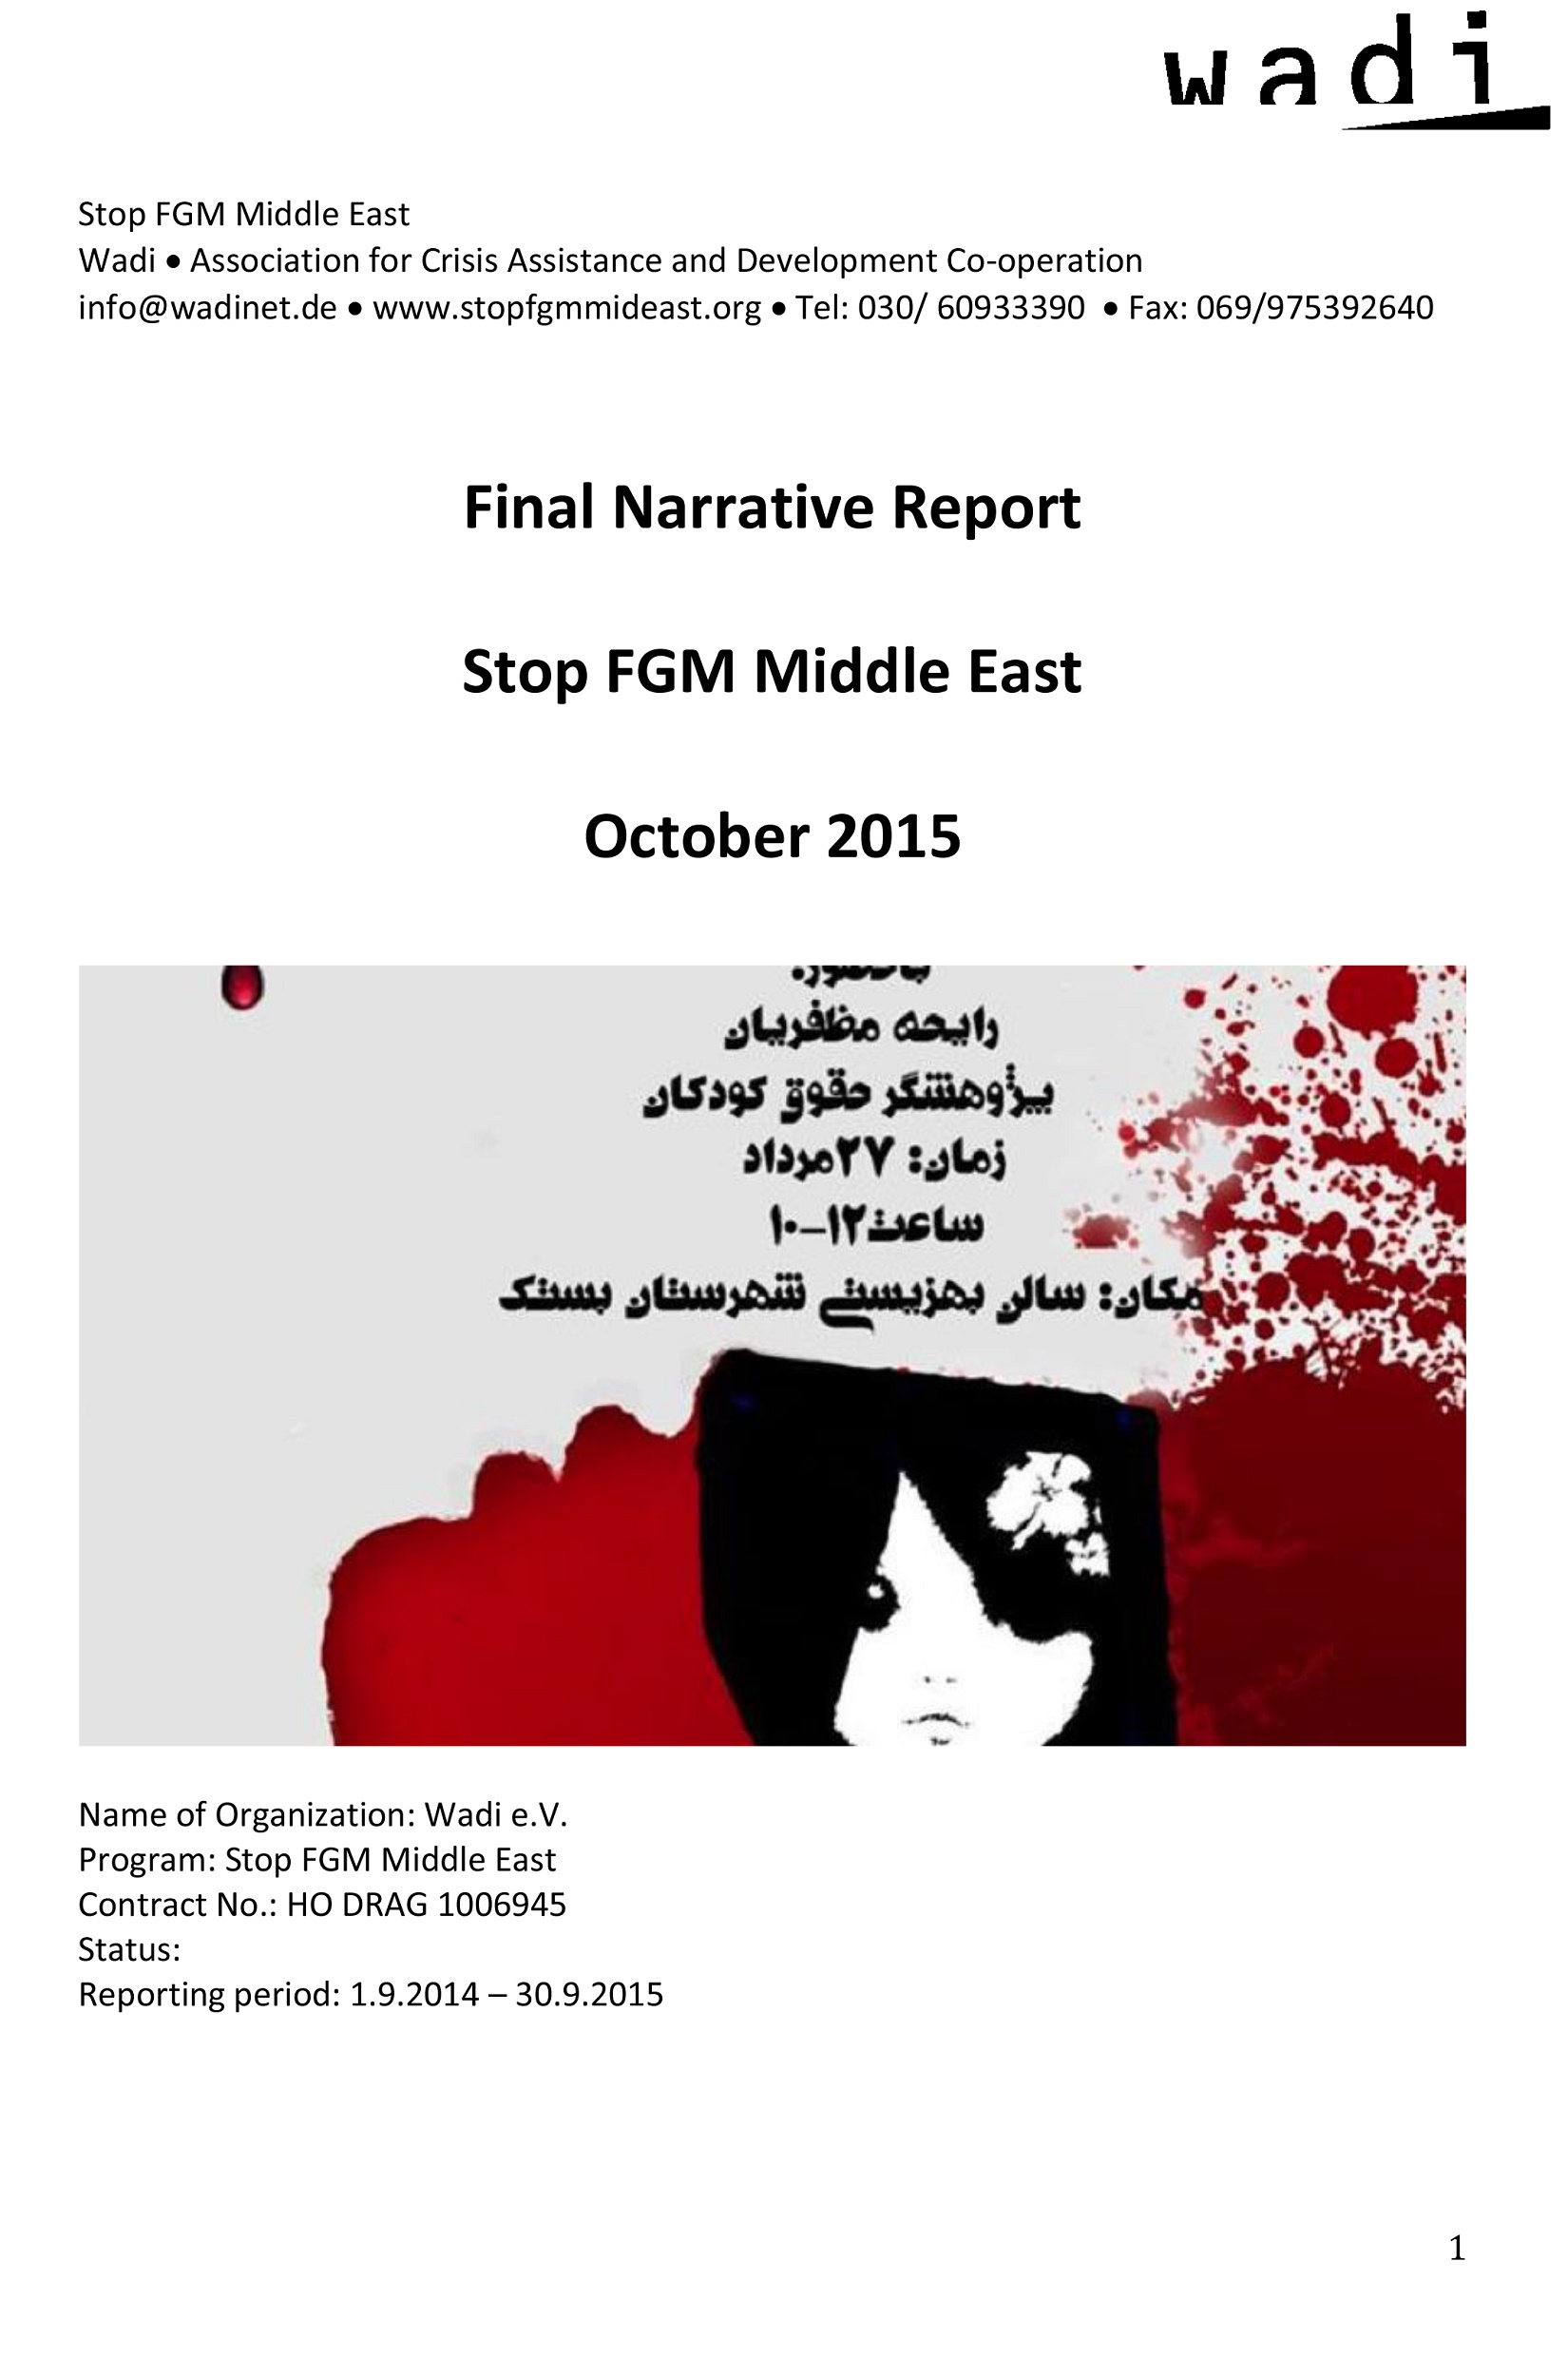 Final-Narrative-Report-Stop-FGM-Mideast-Oct-2015_public-1